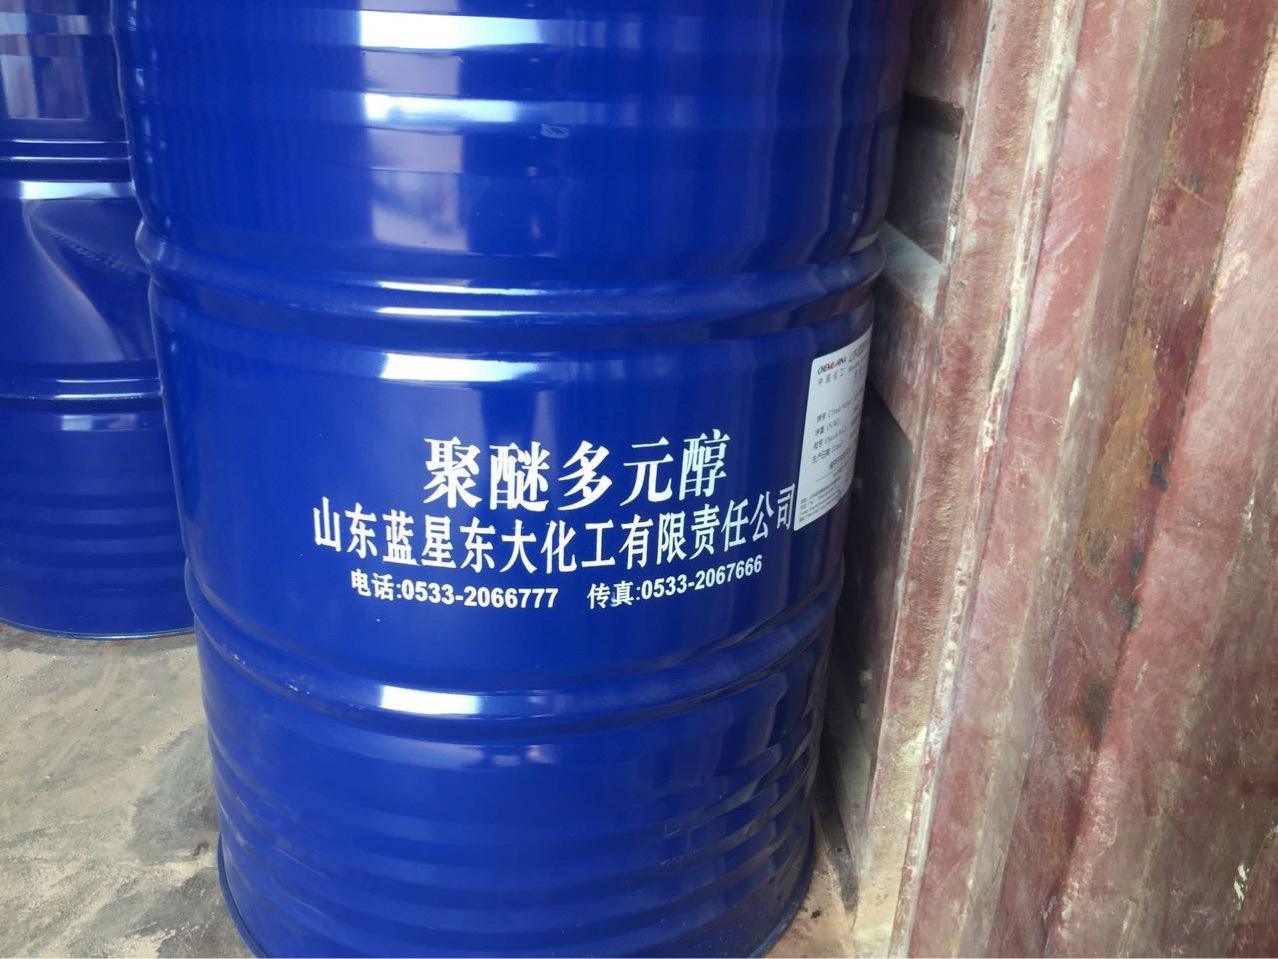 广州回收橡胶硫化剂大量收购不限地区